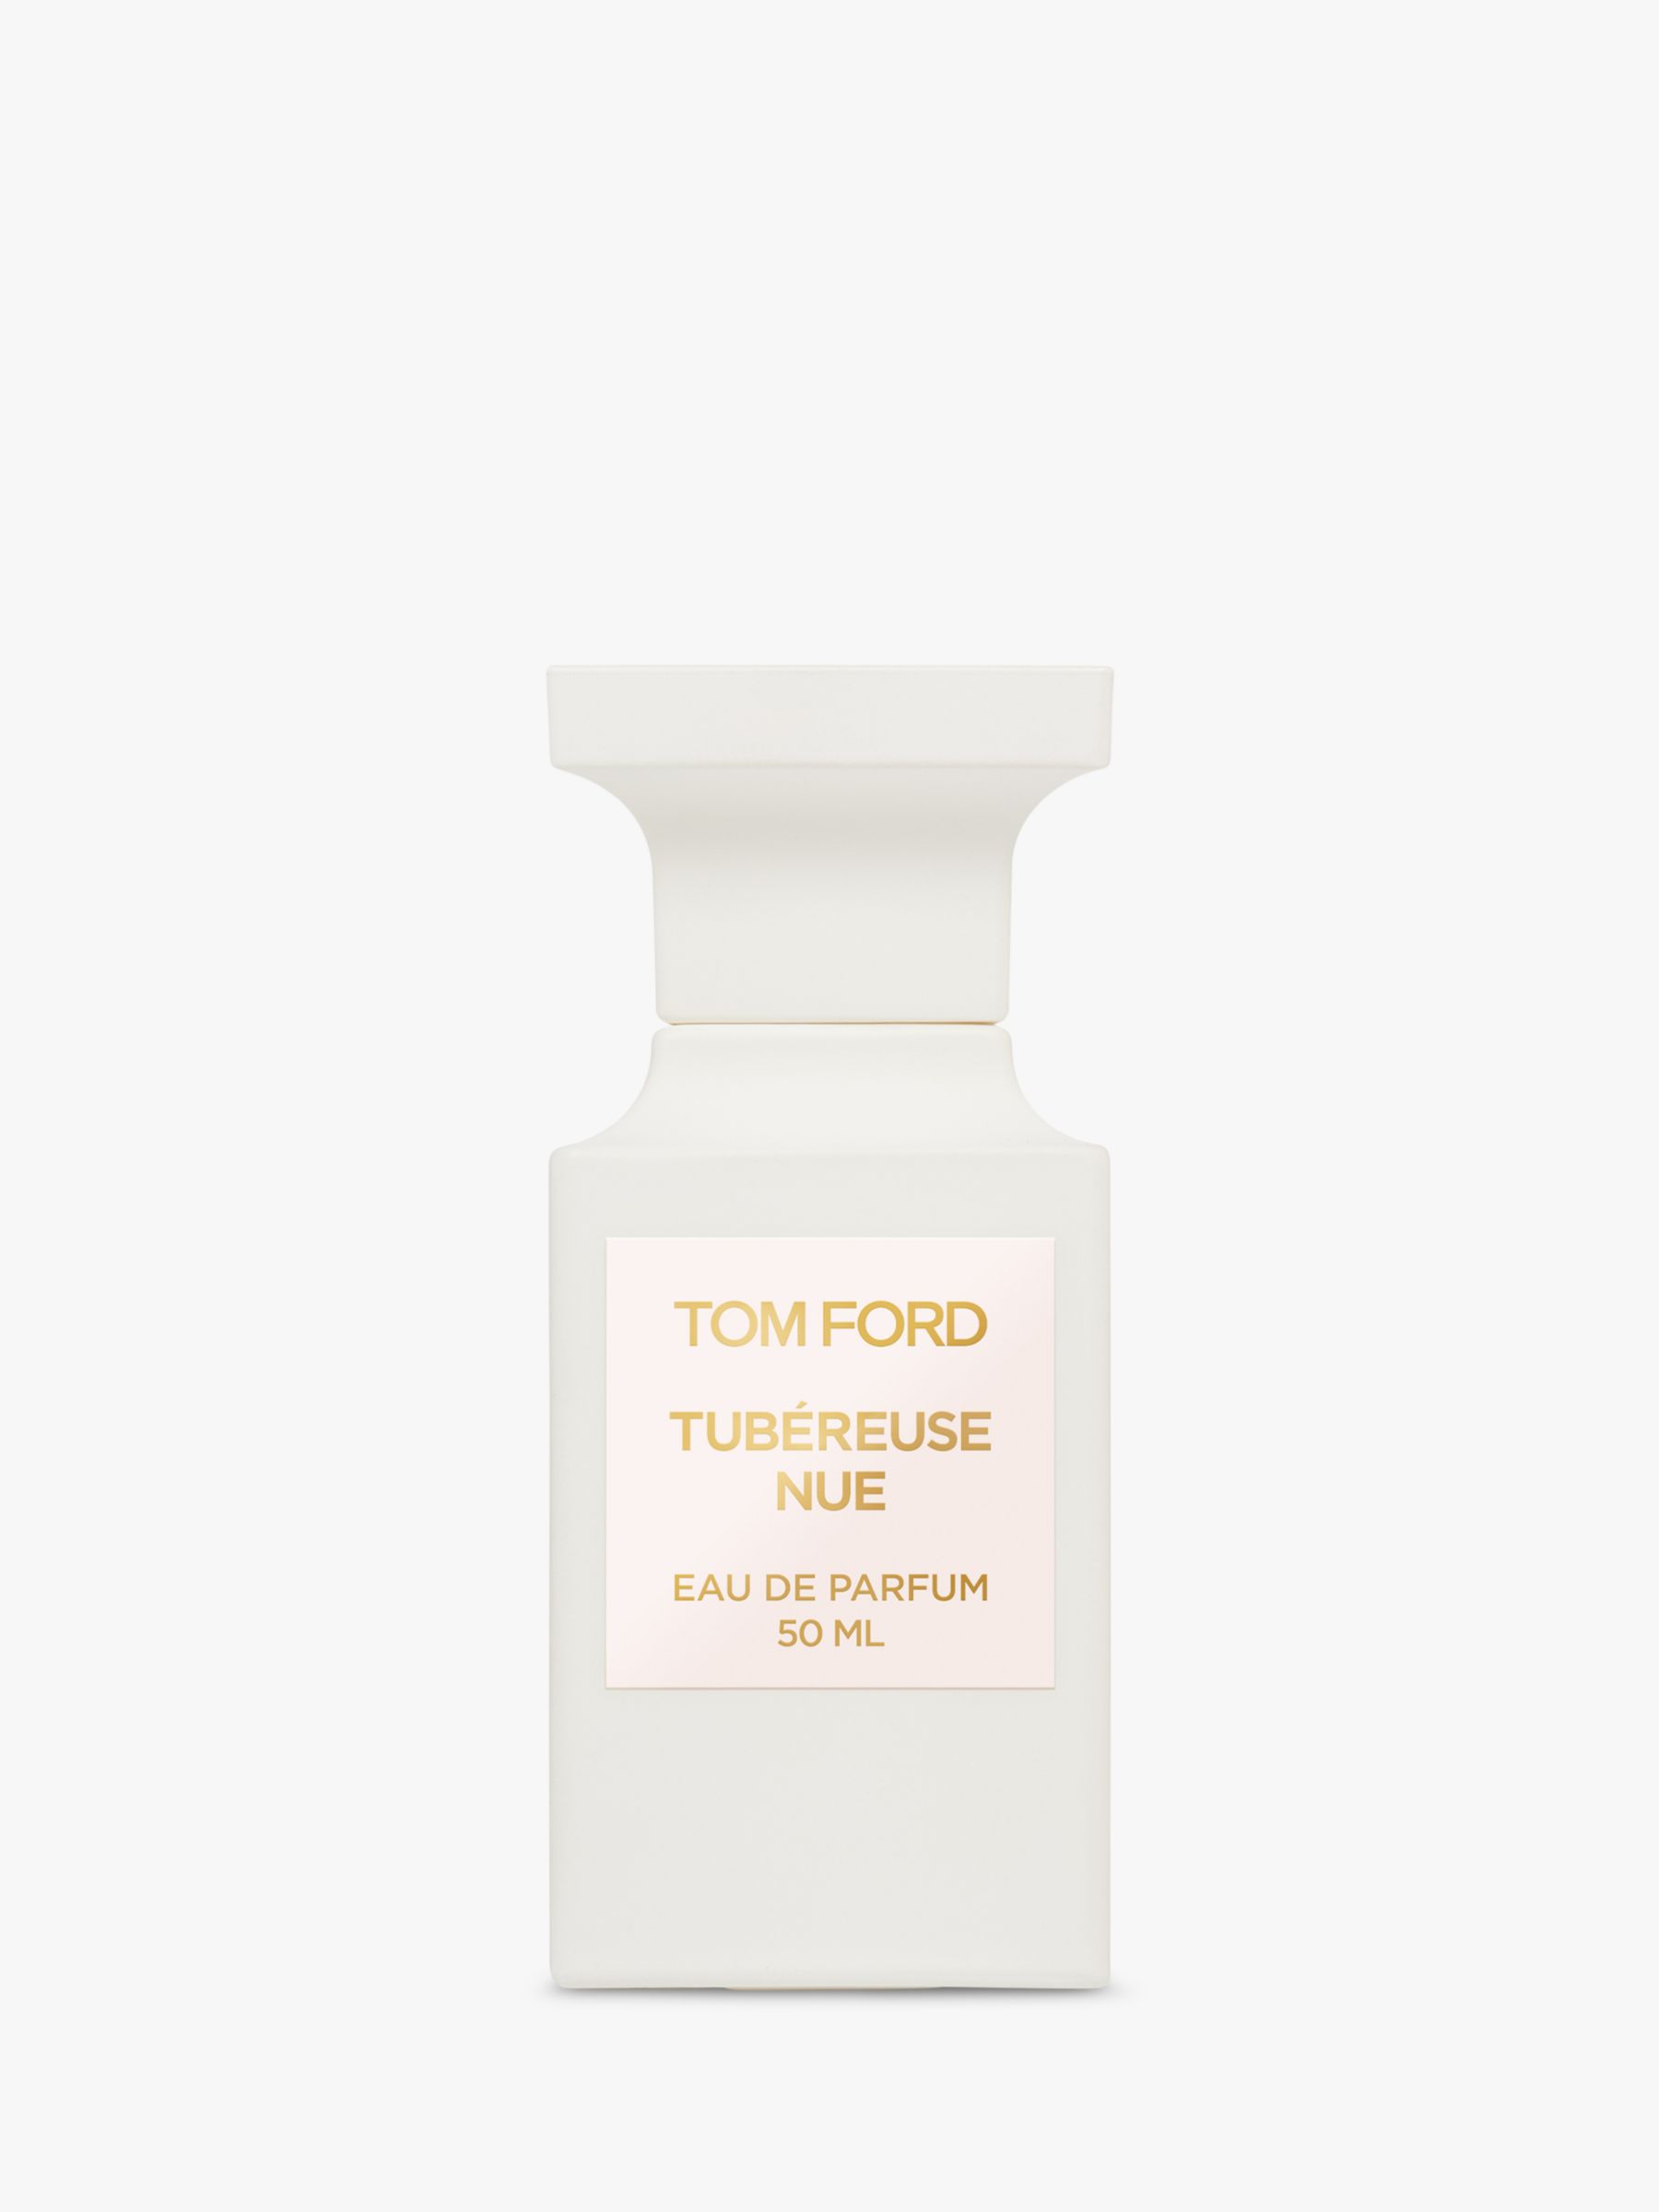 TOM FORD Private Blend Tubéreuse Nue Eau de Parfum, 50ml at John Lewis &  Partners